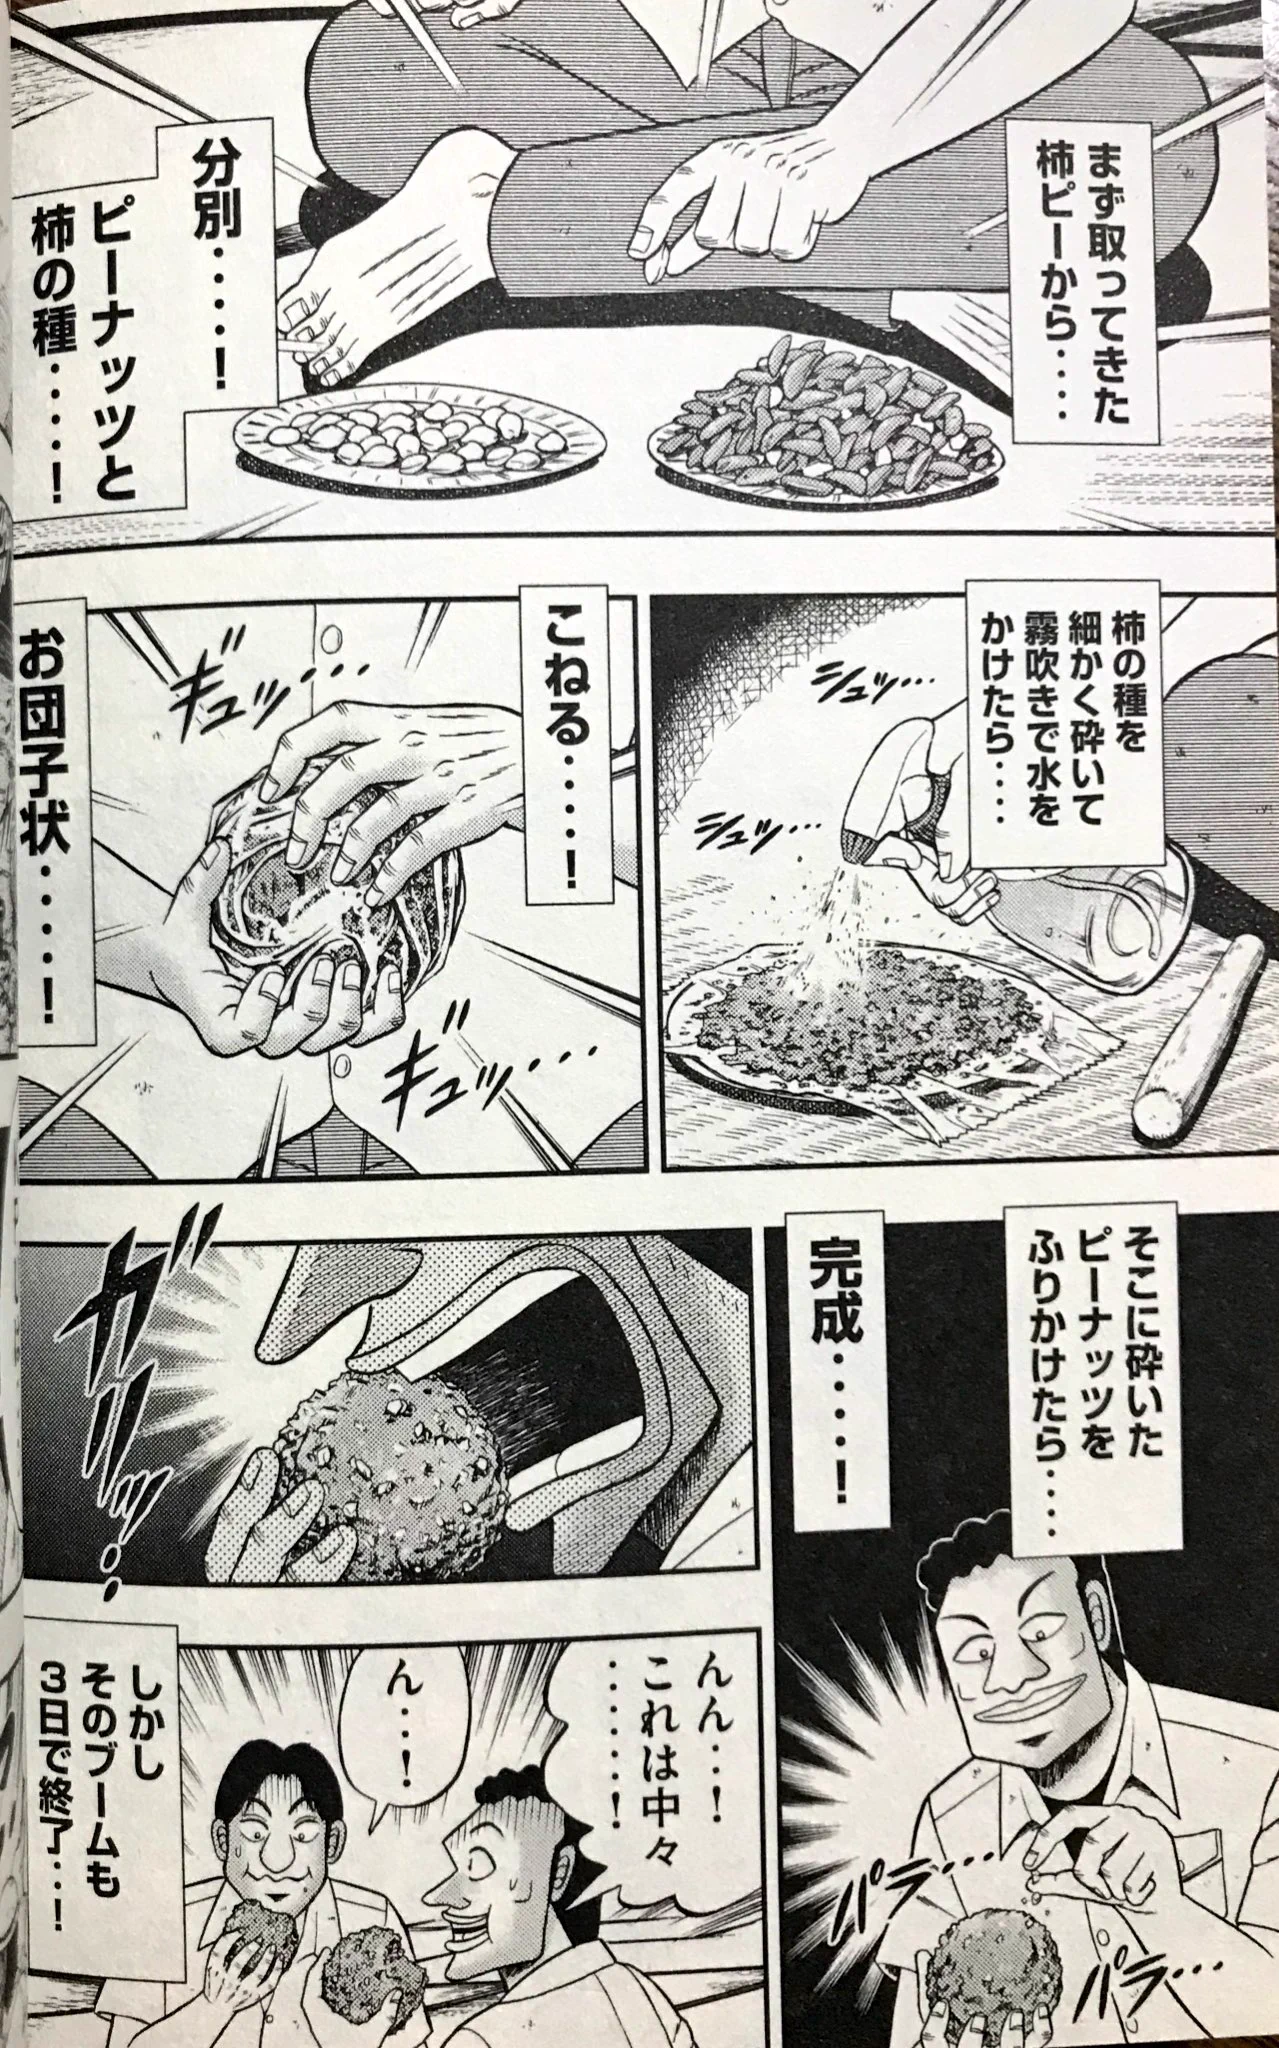 あの漫画で話題となった柿ピーボールが発売されているww亀田製菓やるねww